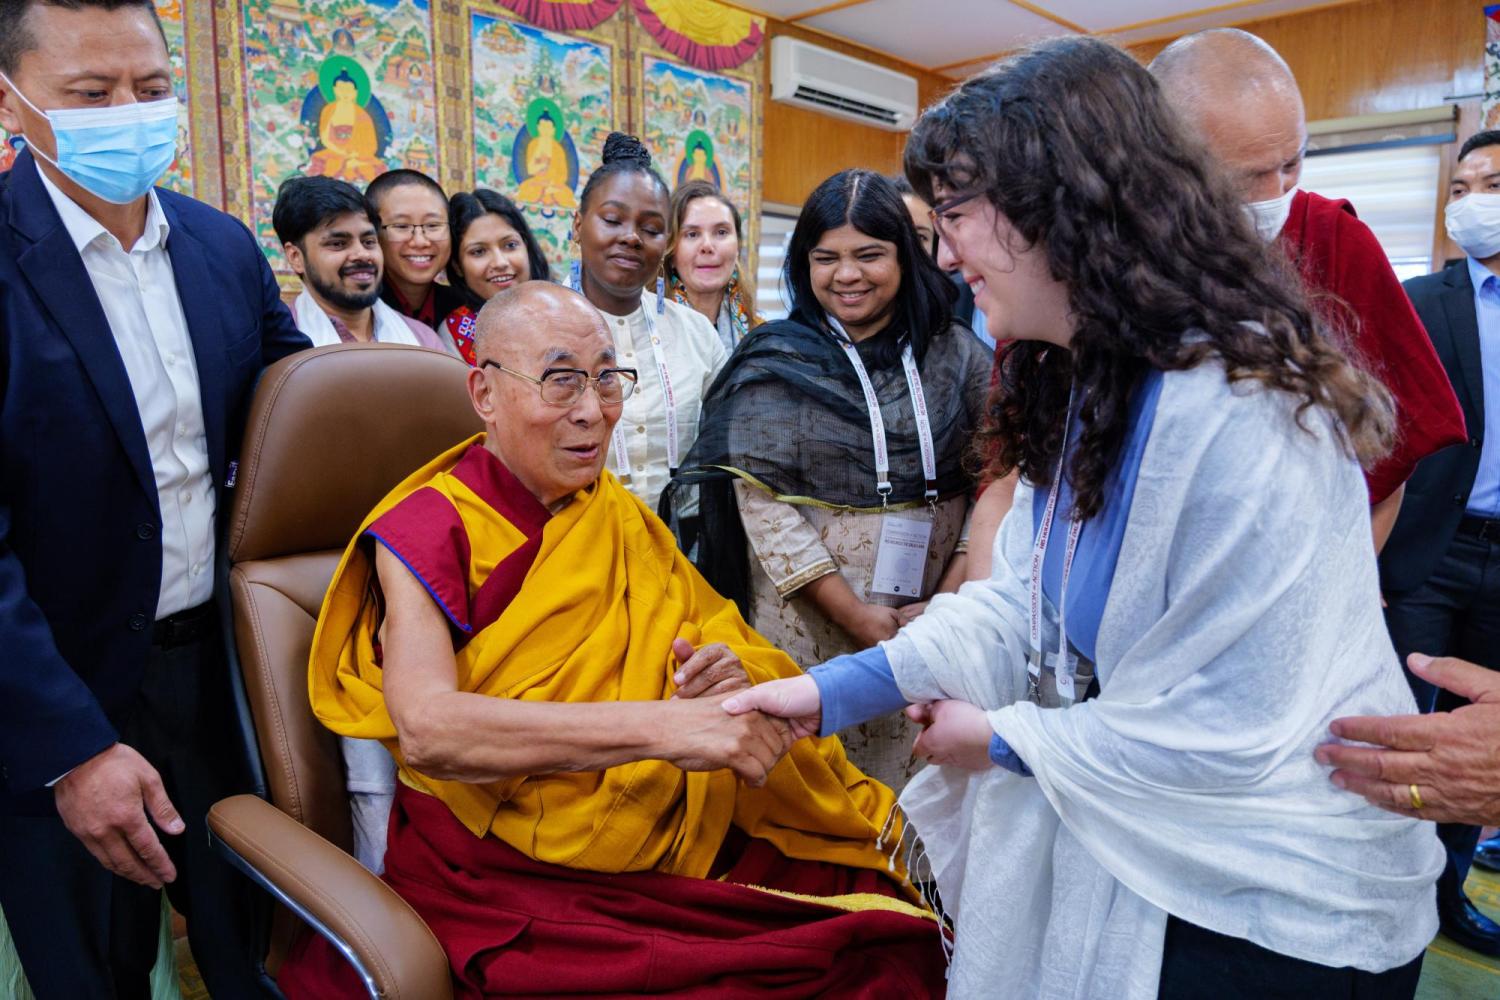 Nikki Bechtold meets the Dalai Lama